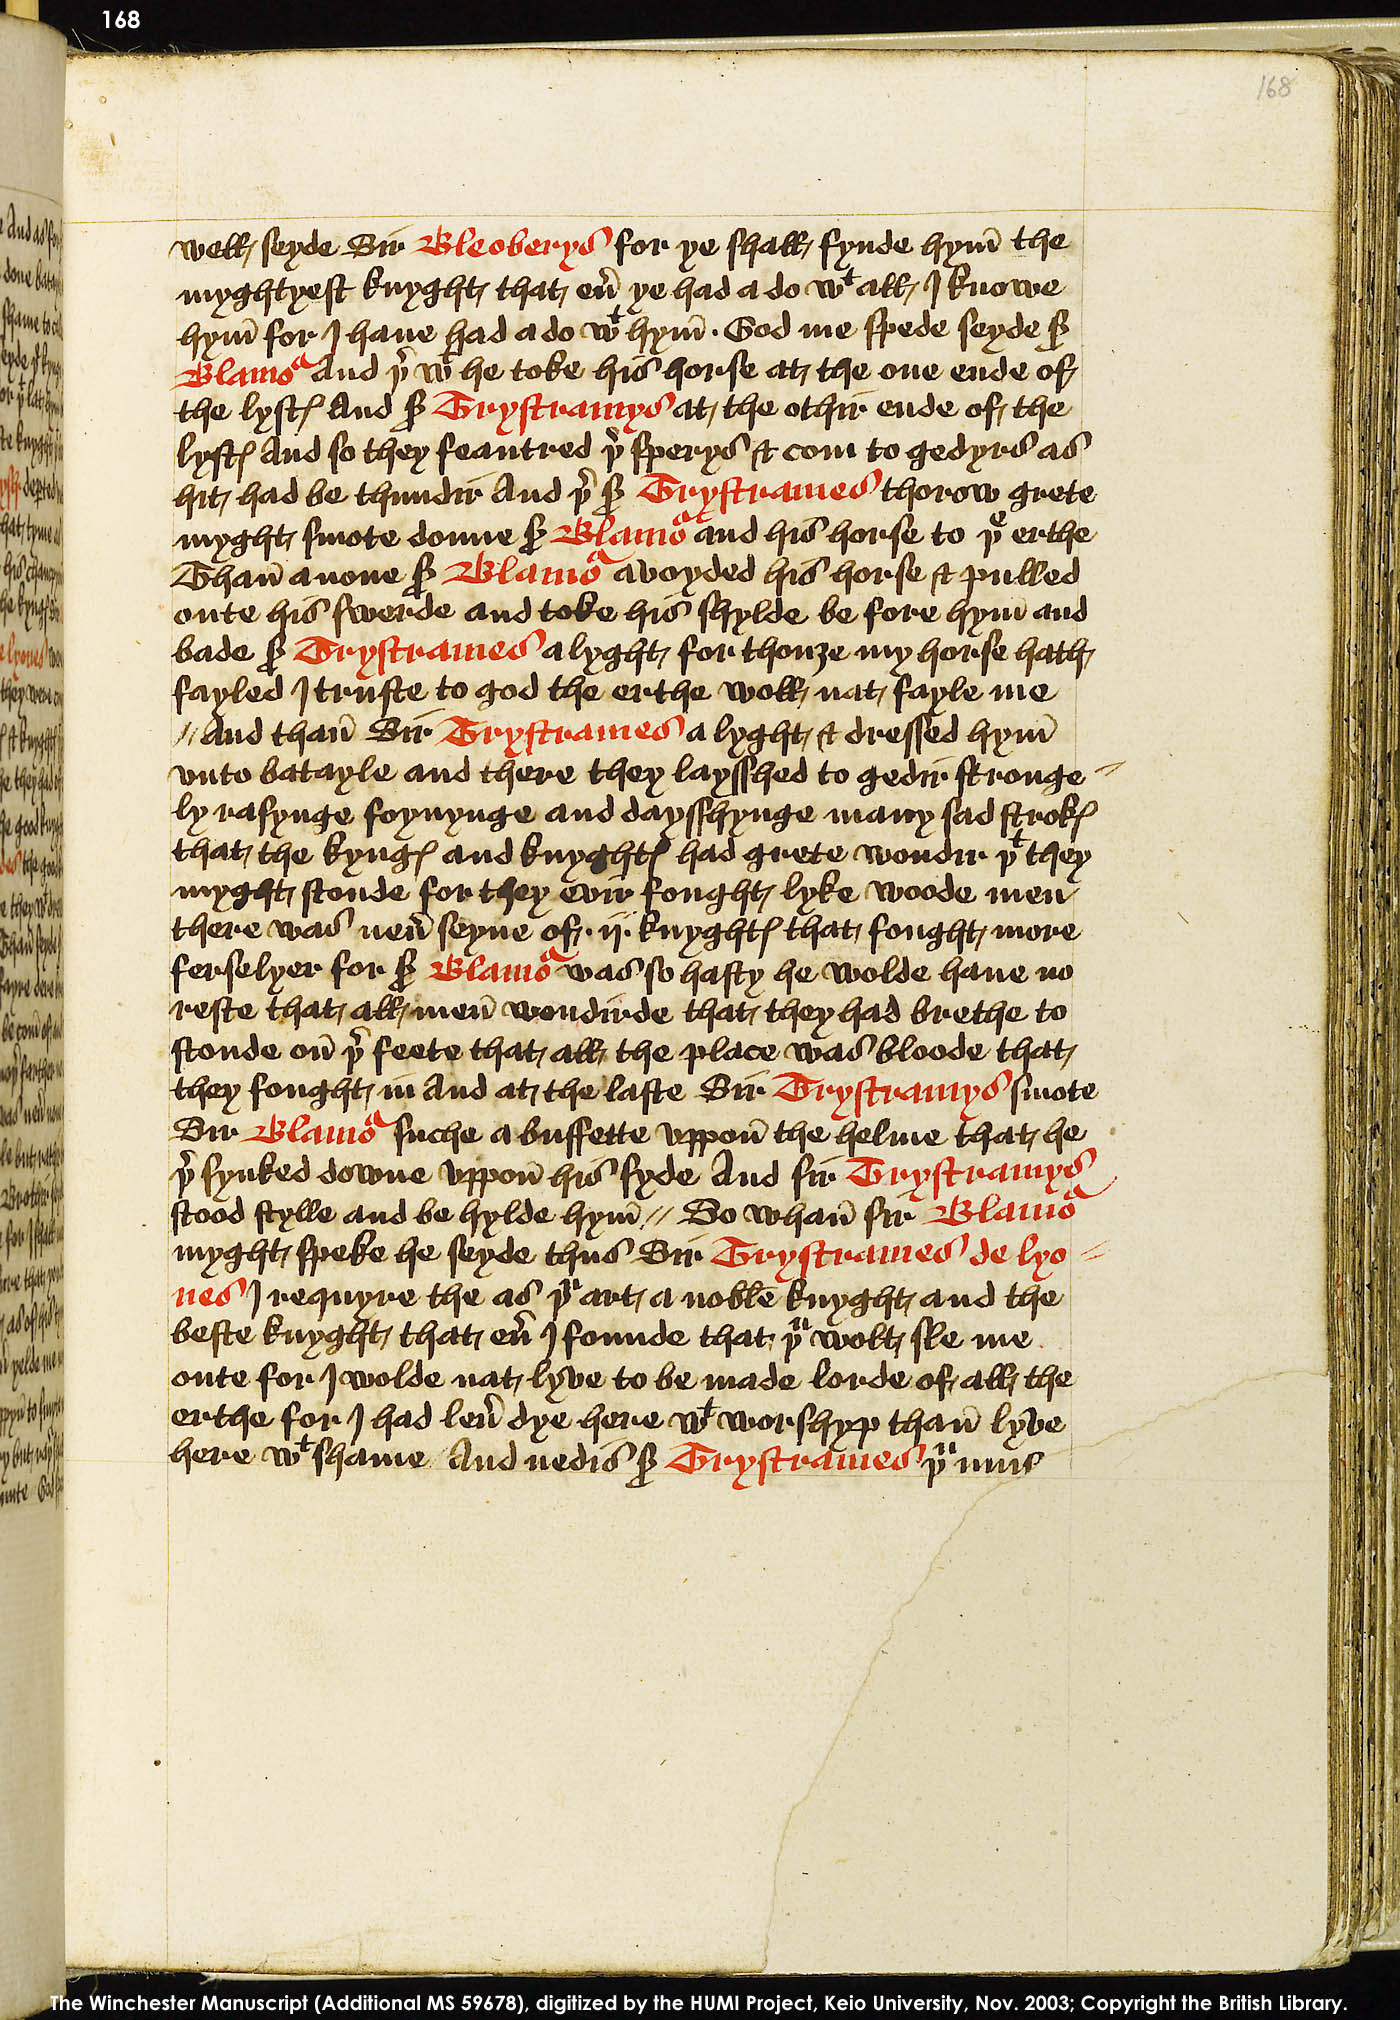 Folio 168r